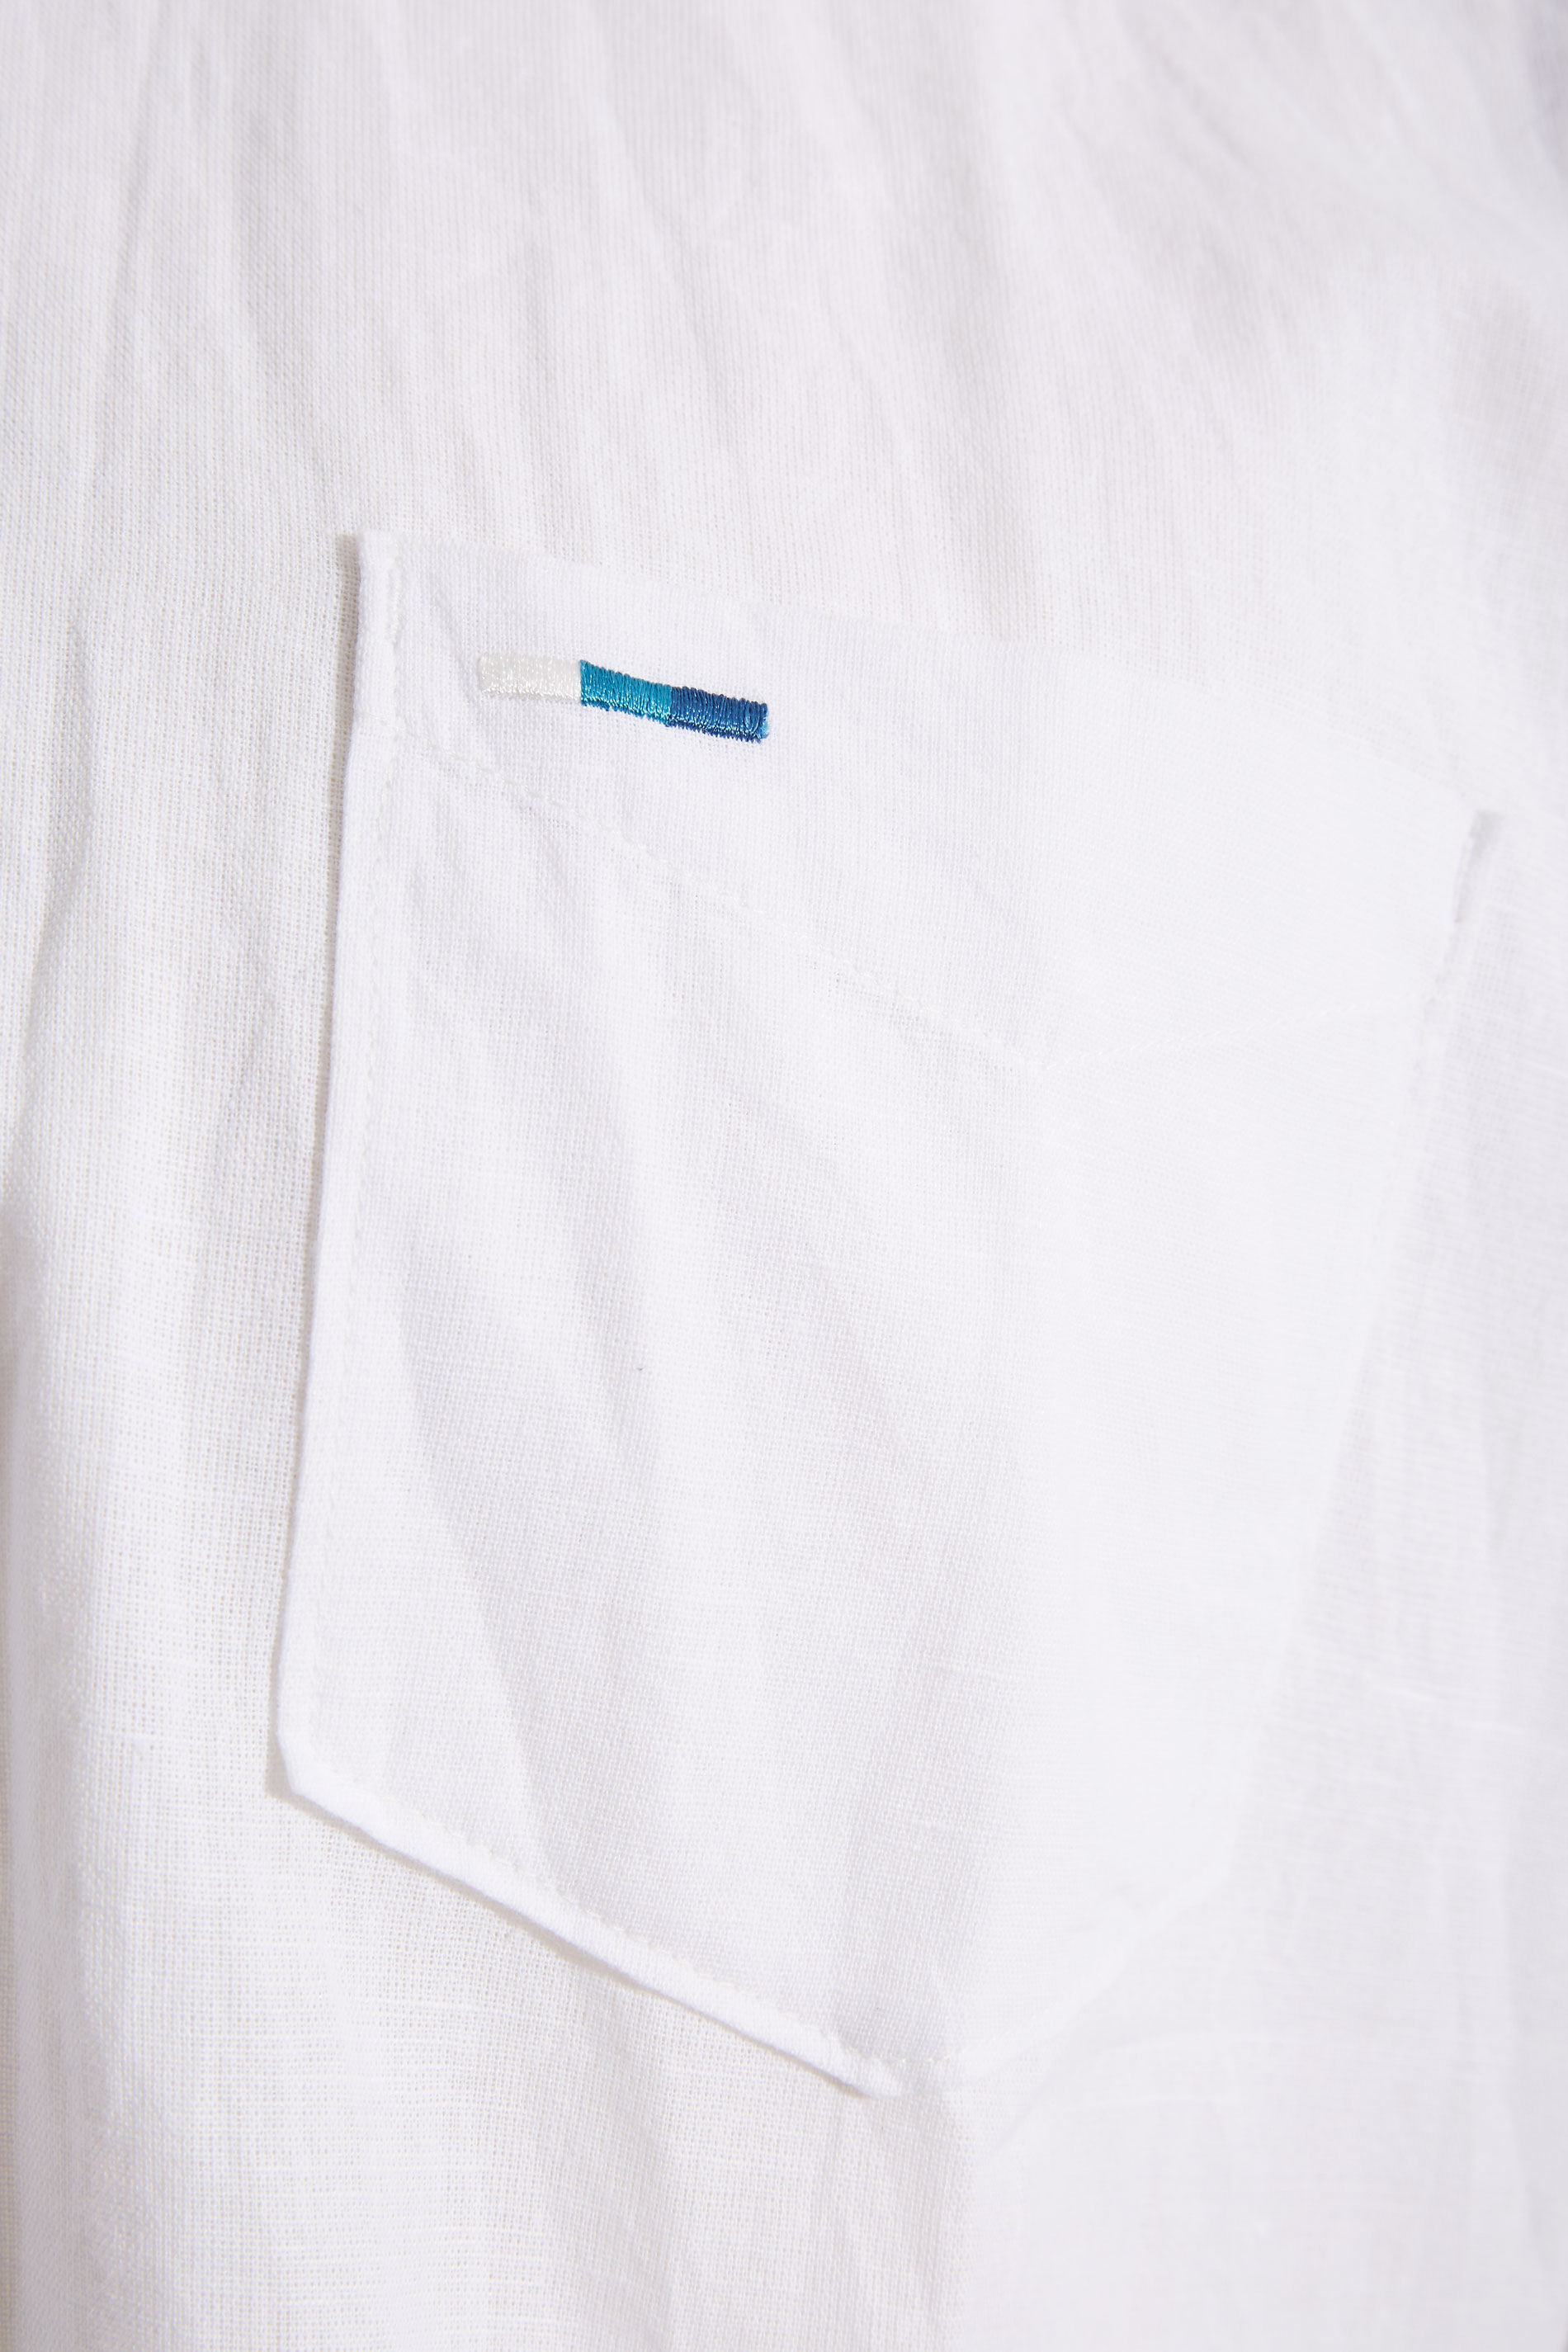 BadRhino Big & Tall White Linen Shirt | BadRhino 2